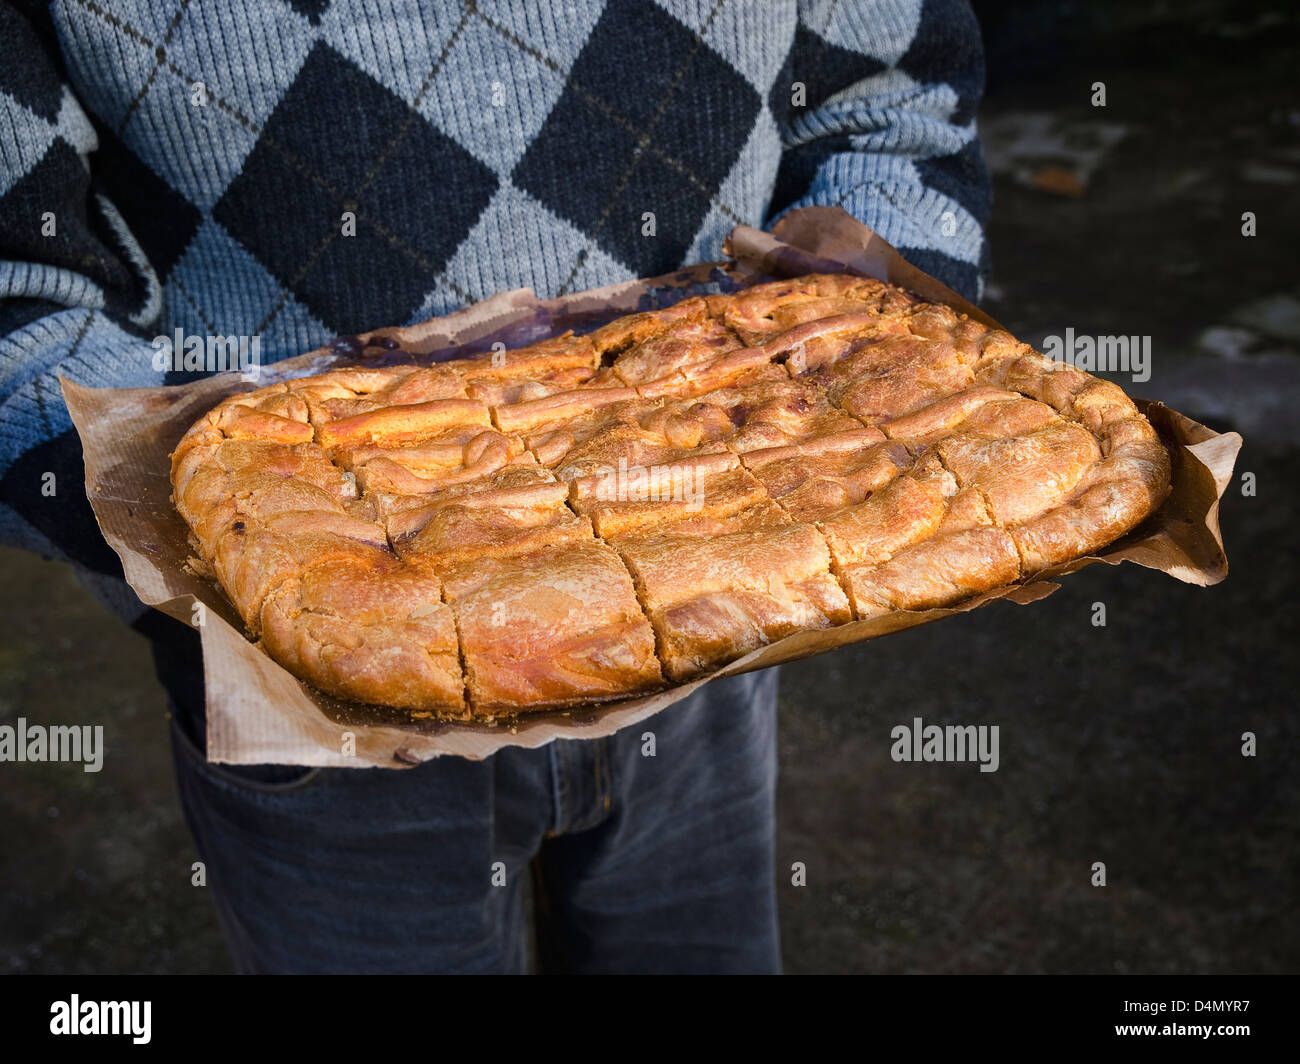 Empanada Gallega : gâteau traditionnel farcis au thon ou viande typique de Galice, Espagne Banque D'Images